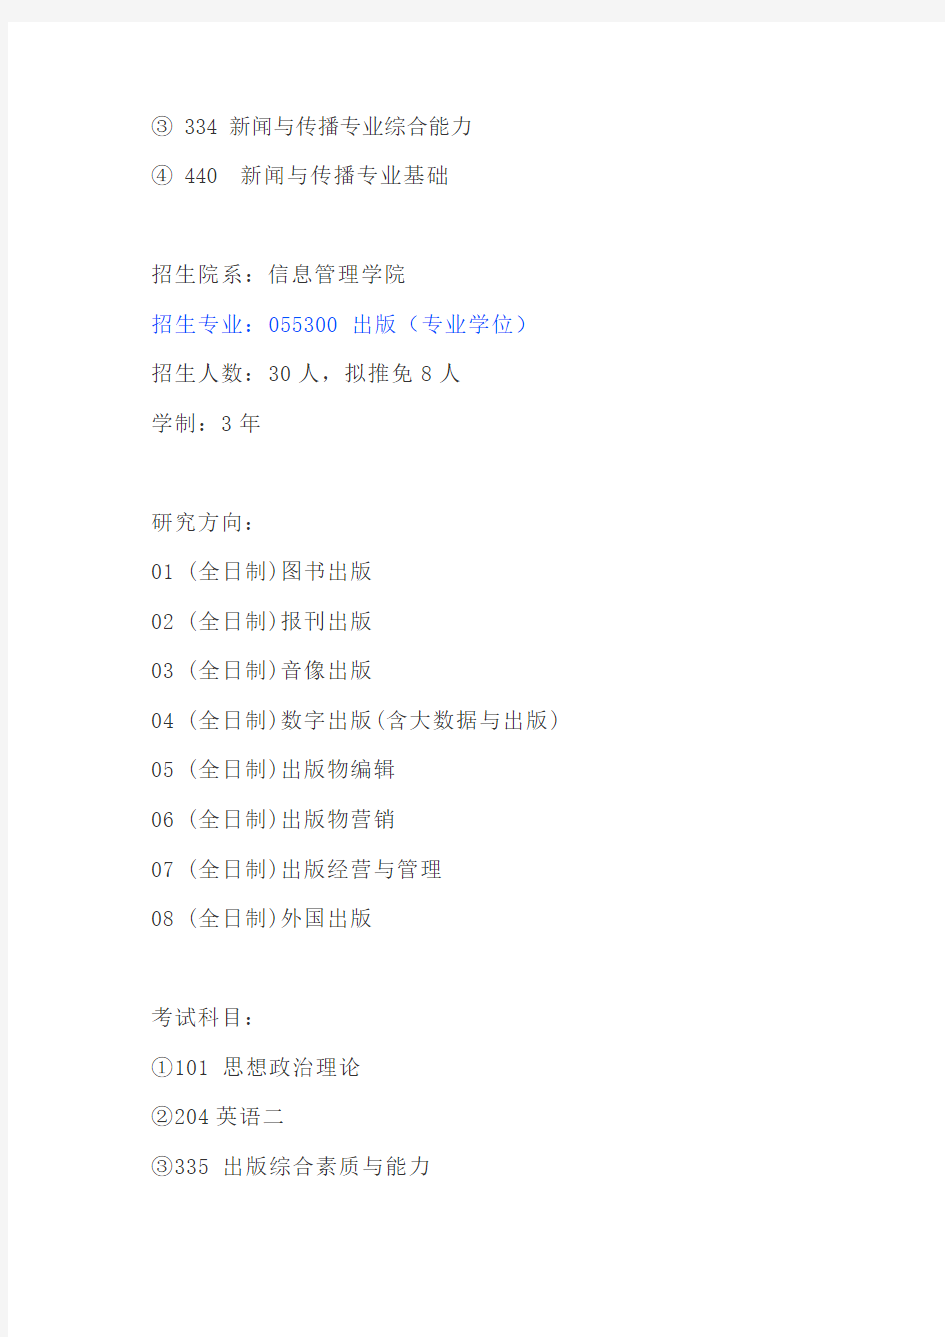 【初试】2020南京大学新闻与传播(MJC)、出版专硕考研初试科目、招生人数、参考书目、复试分数线